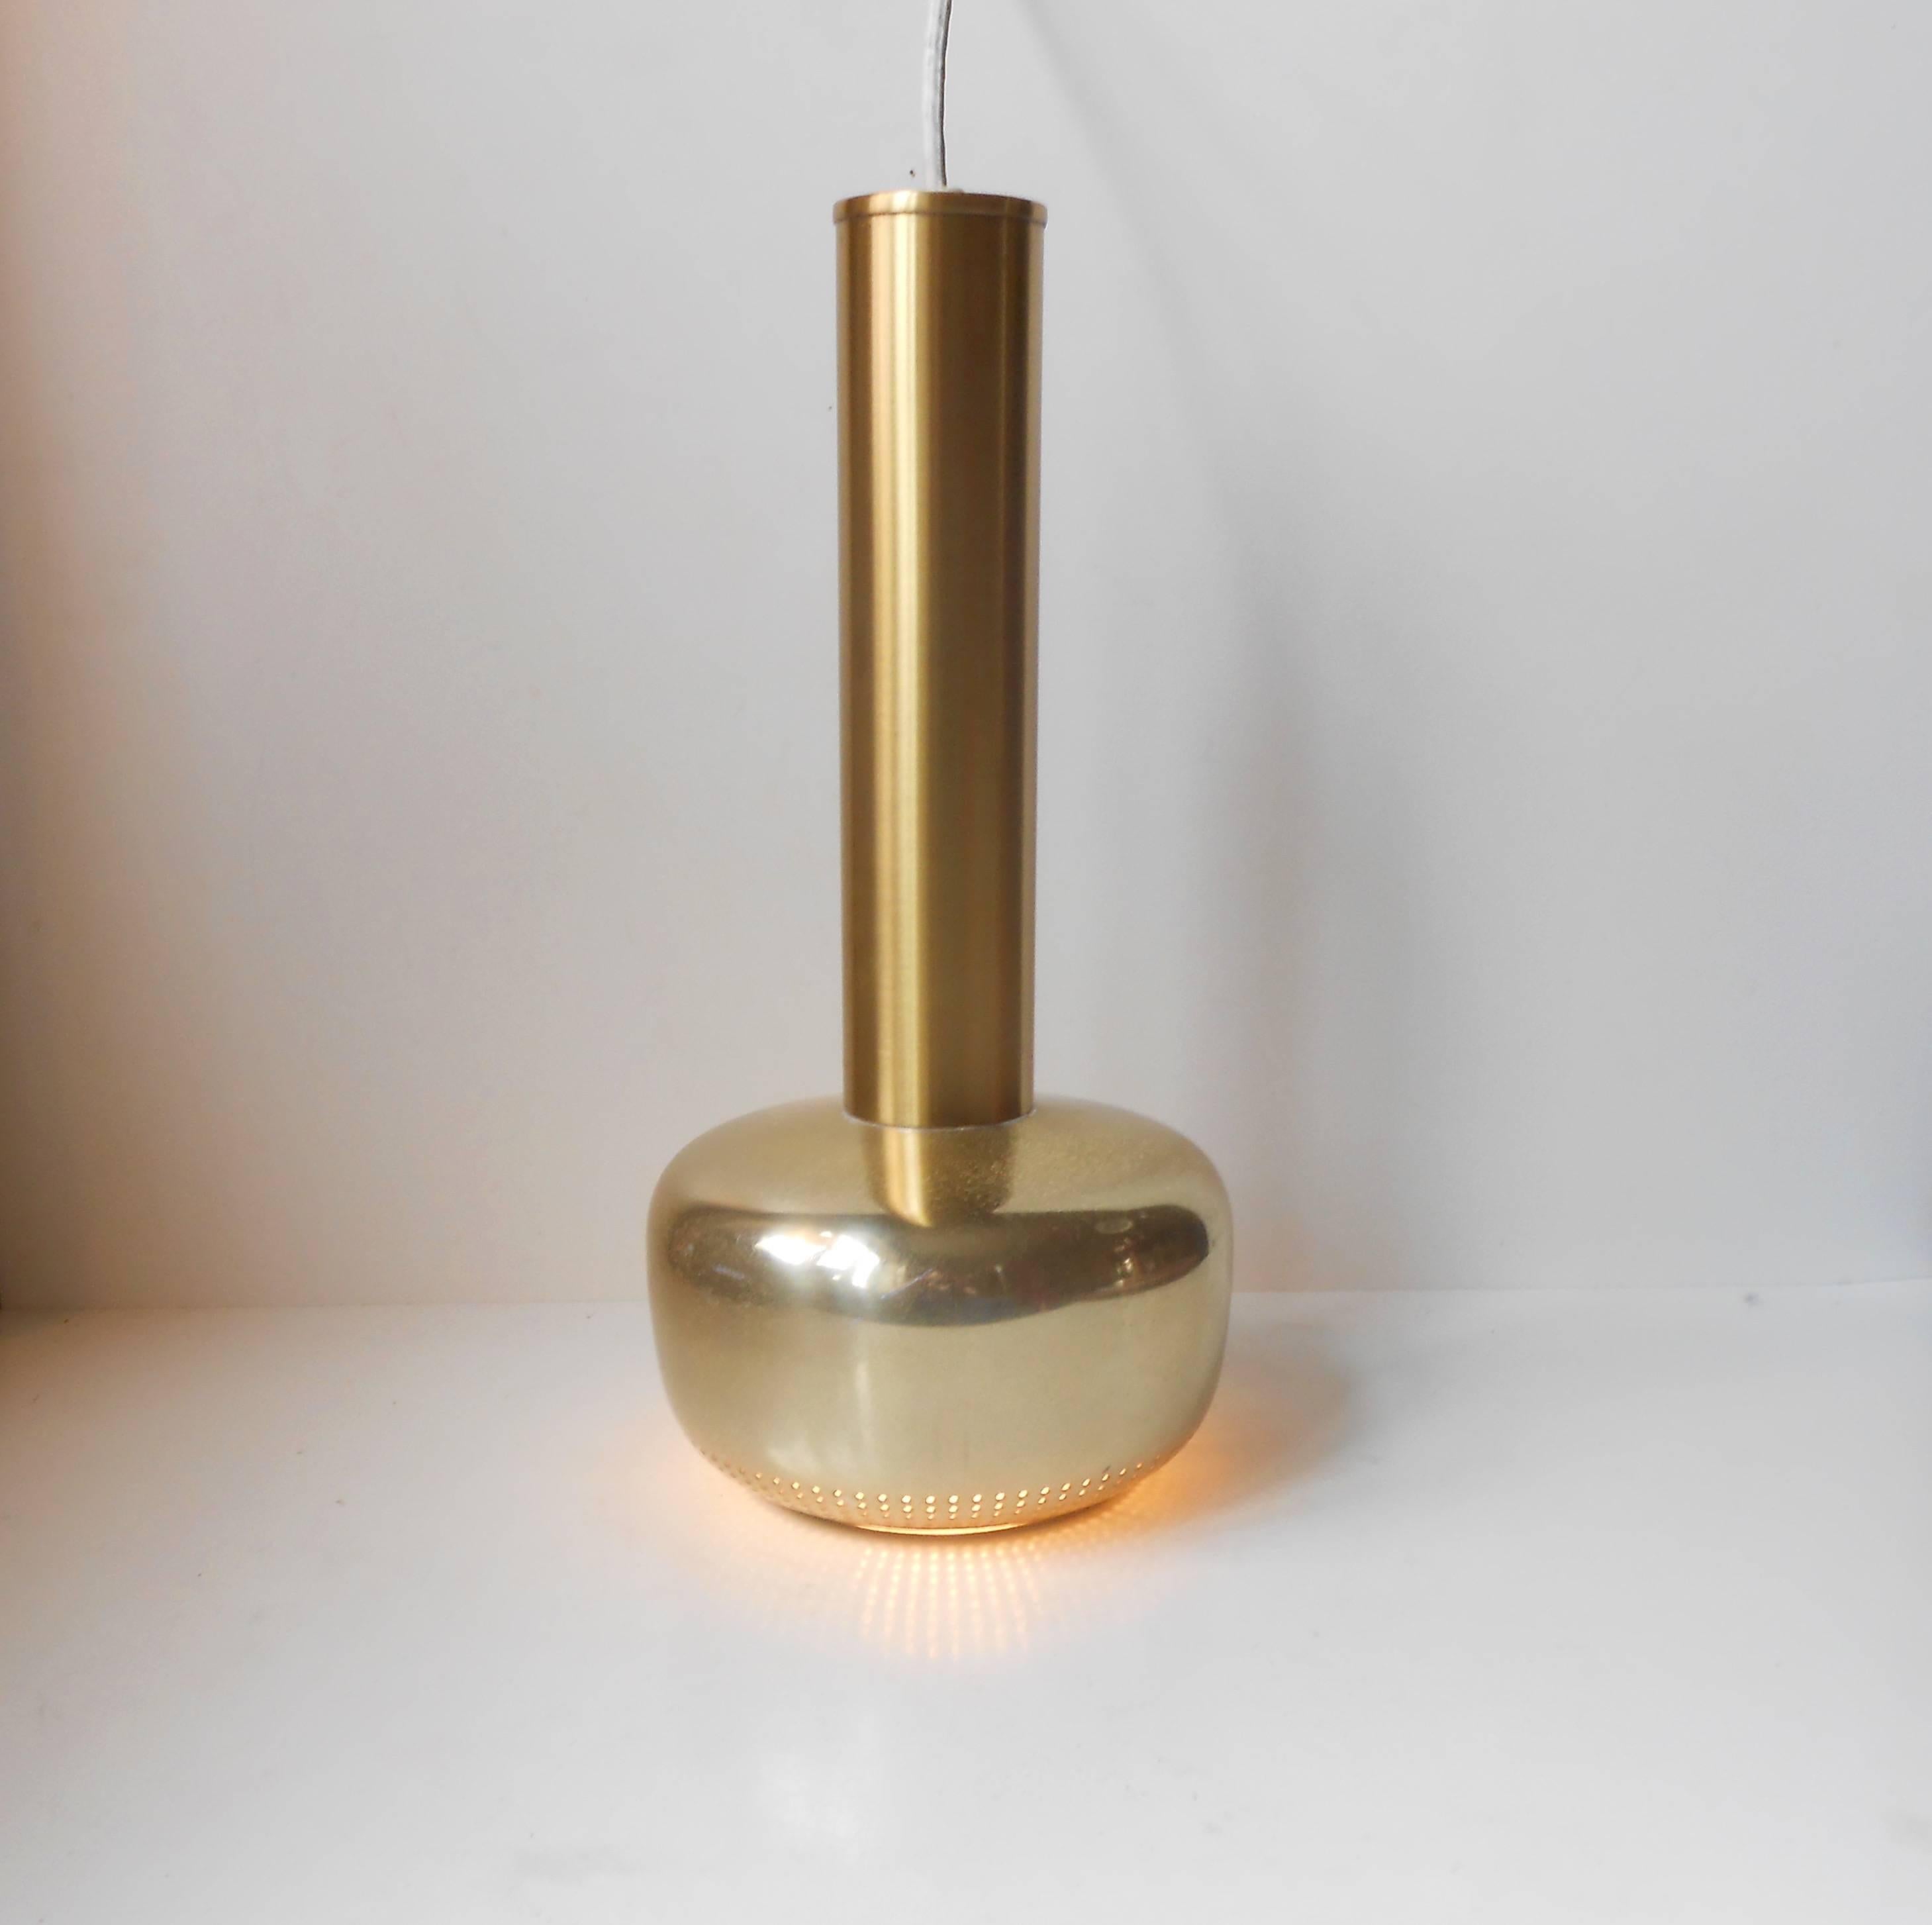 Vilhelm Lauritzen 'Gold Pendant' lamp for Louis Poulsen, Denmark, 1950s Modern. Measurements: H 15 inches (38 cm), D 7 inches (18 cm).